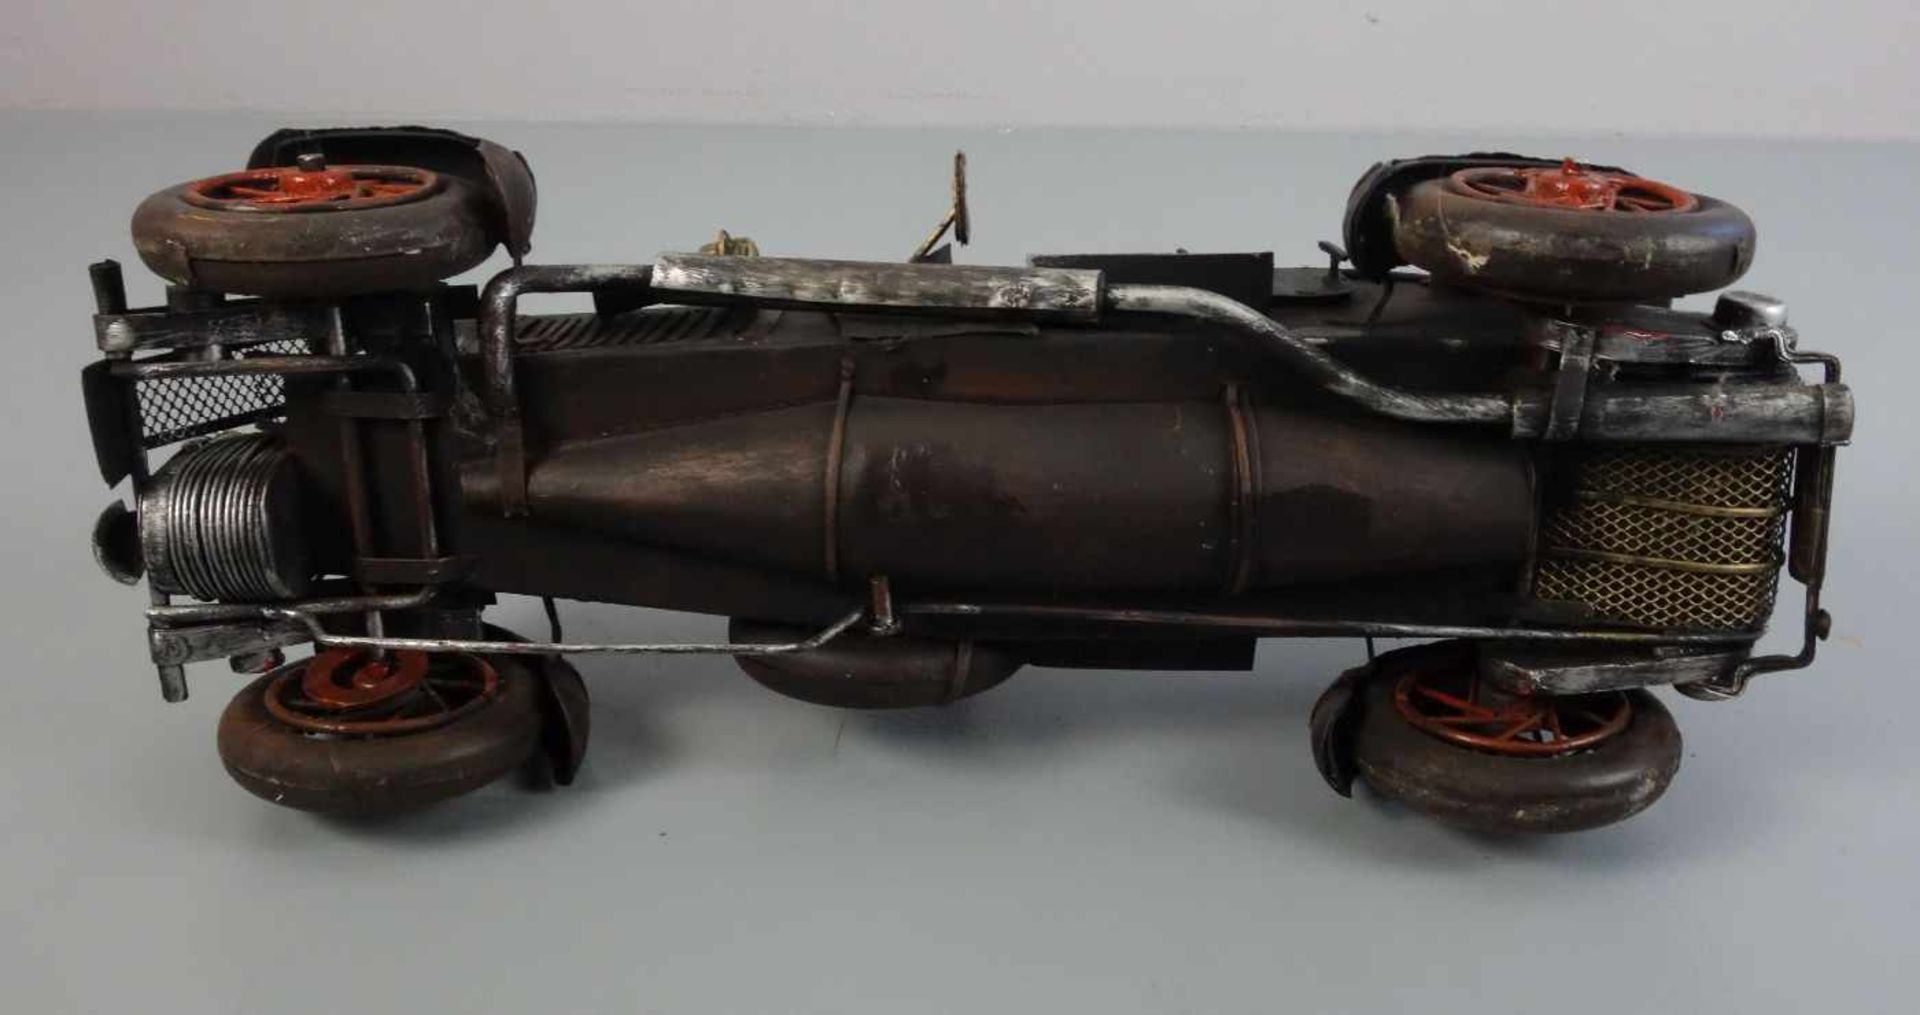 BLECHSPIELZEUG / MODELLAUTO "Oldtimer" / tin toy car, Eisenblech, teils durchbrochen gearbeitet - Image 5 of 5